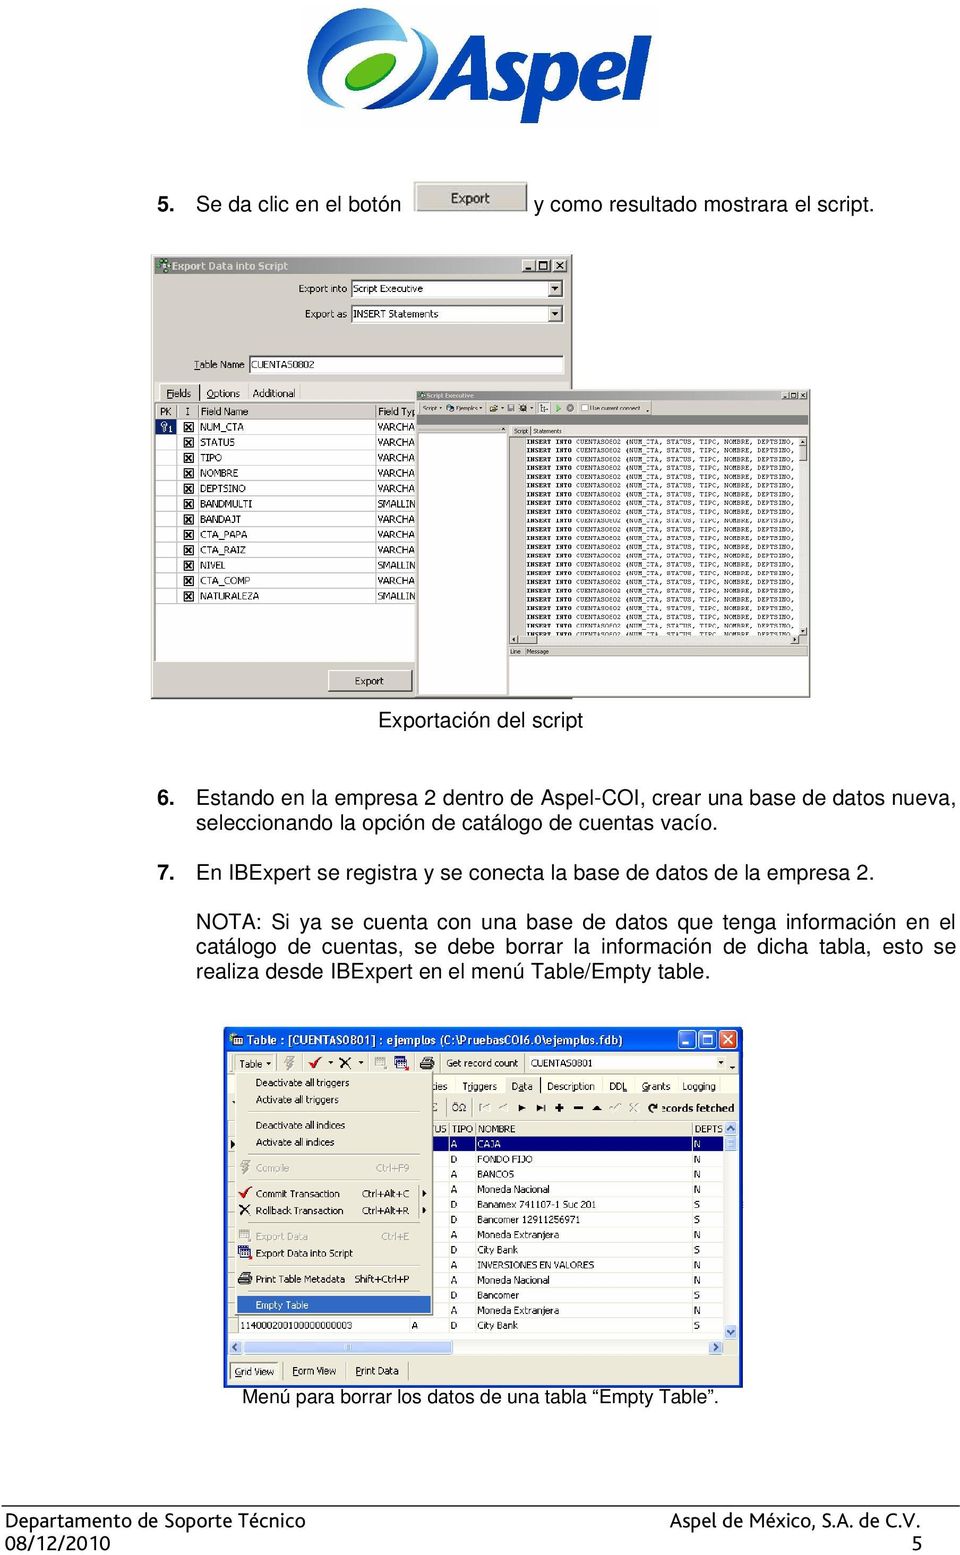 En IBExpert se registra y se conecta la base de datos de la empresa 2.